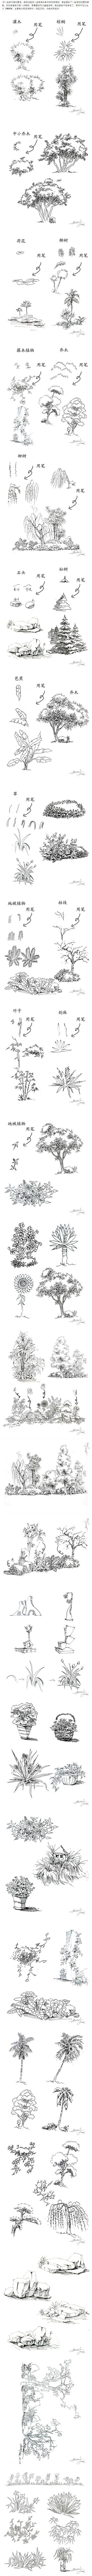 钢笔画手绘景物植物用笔技法